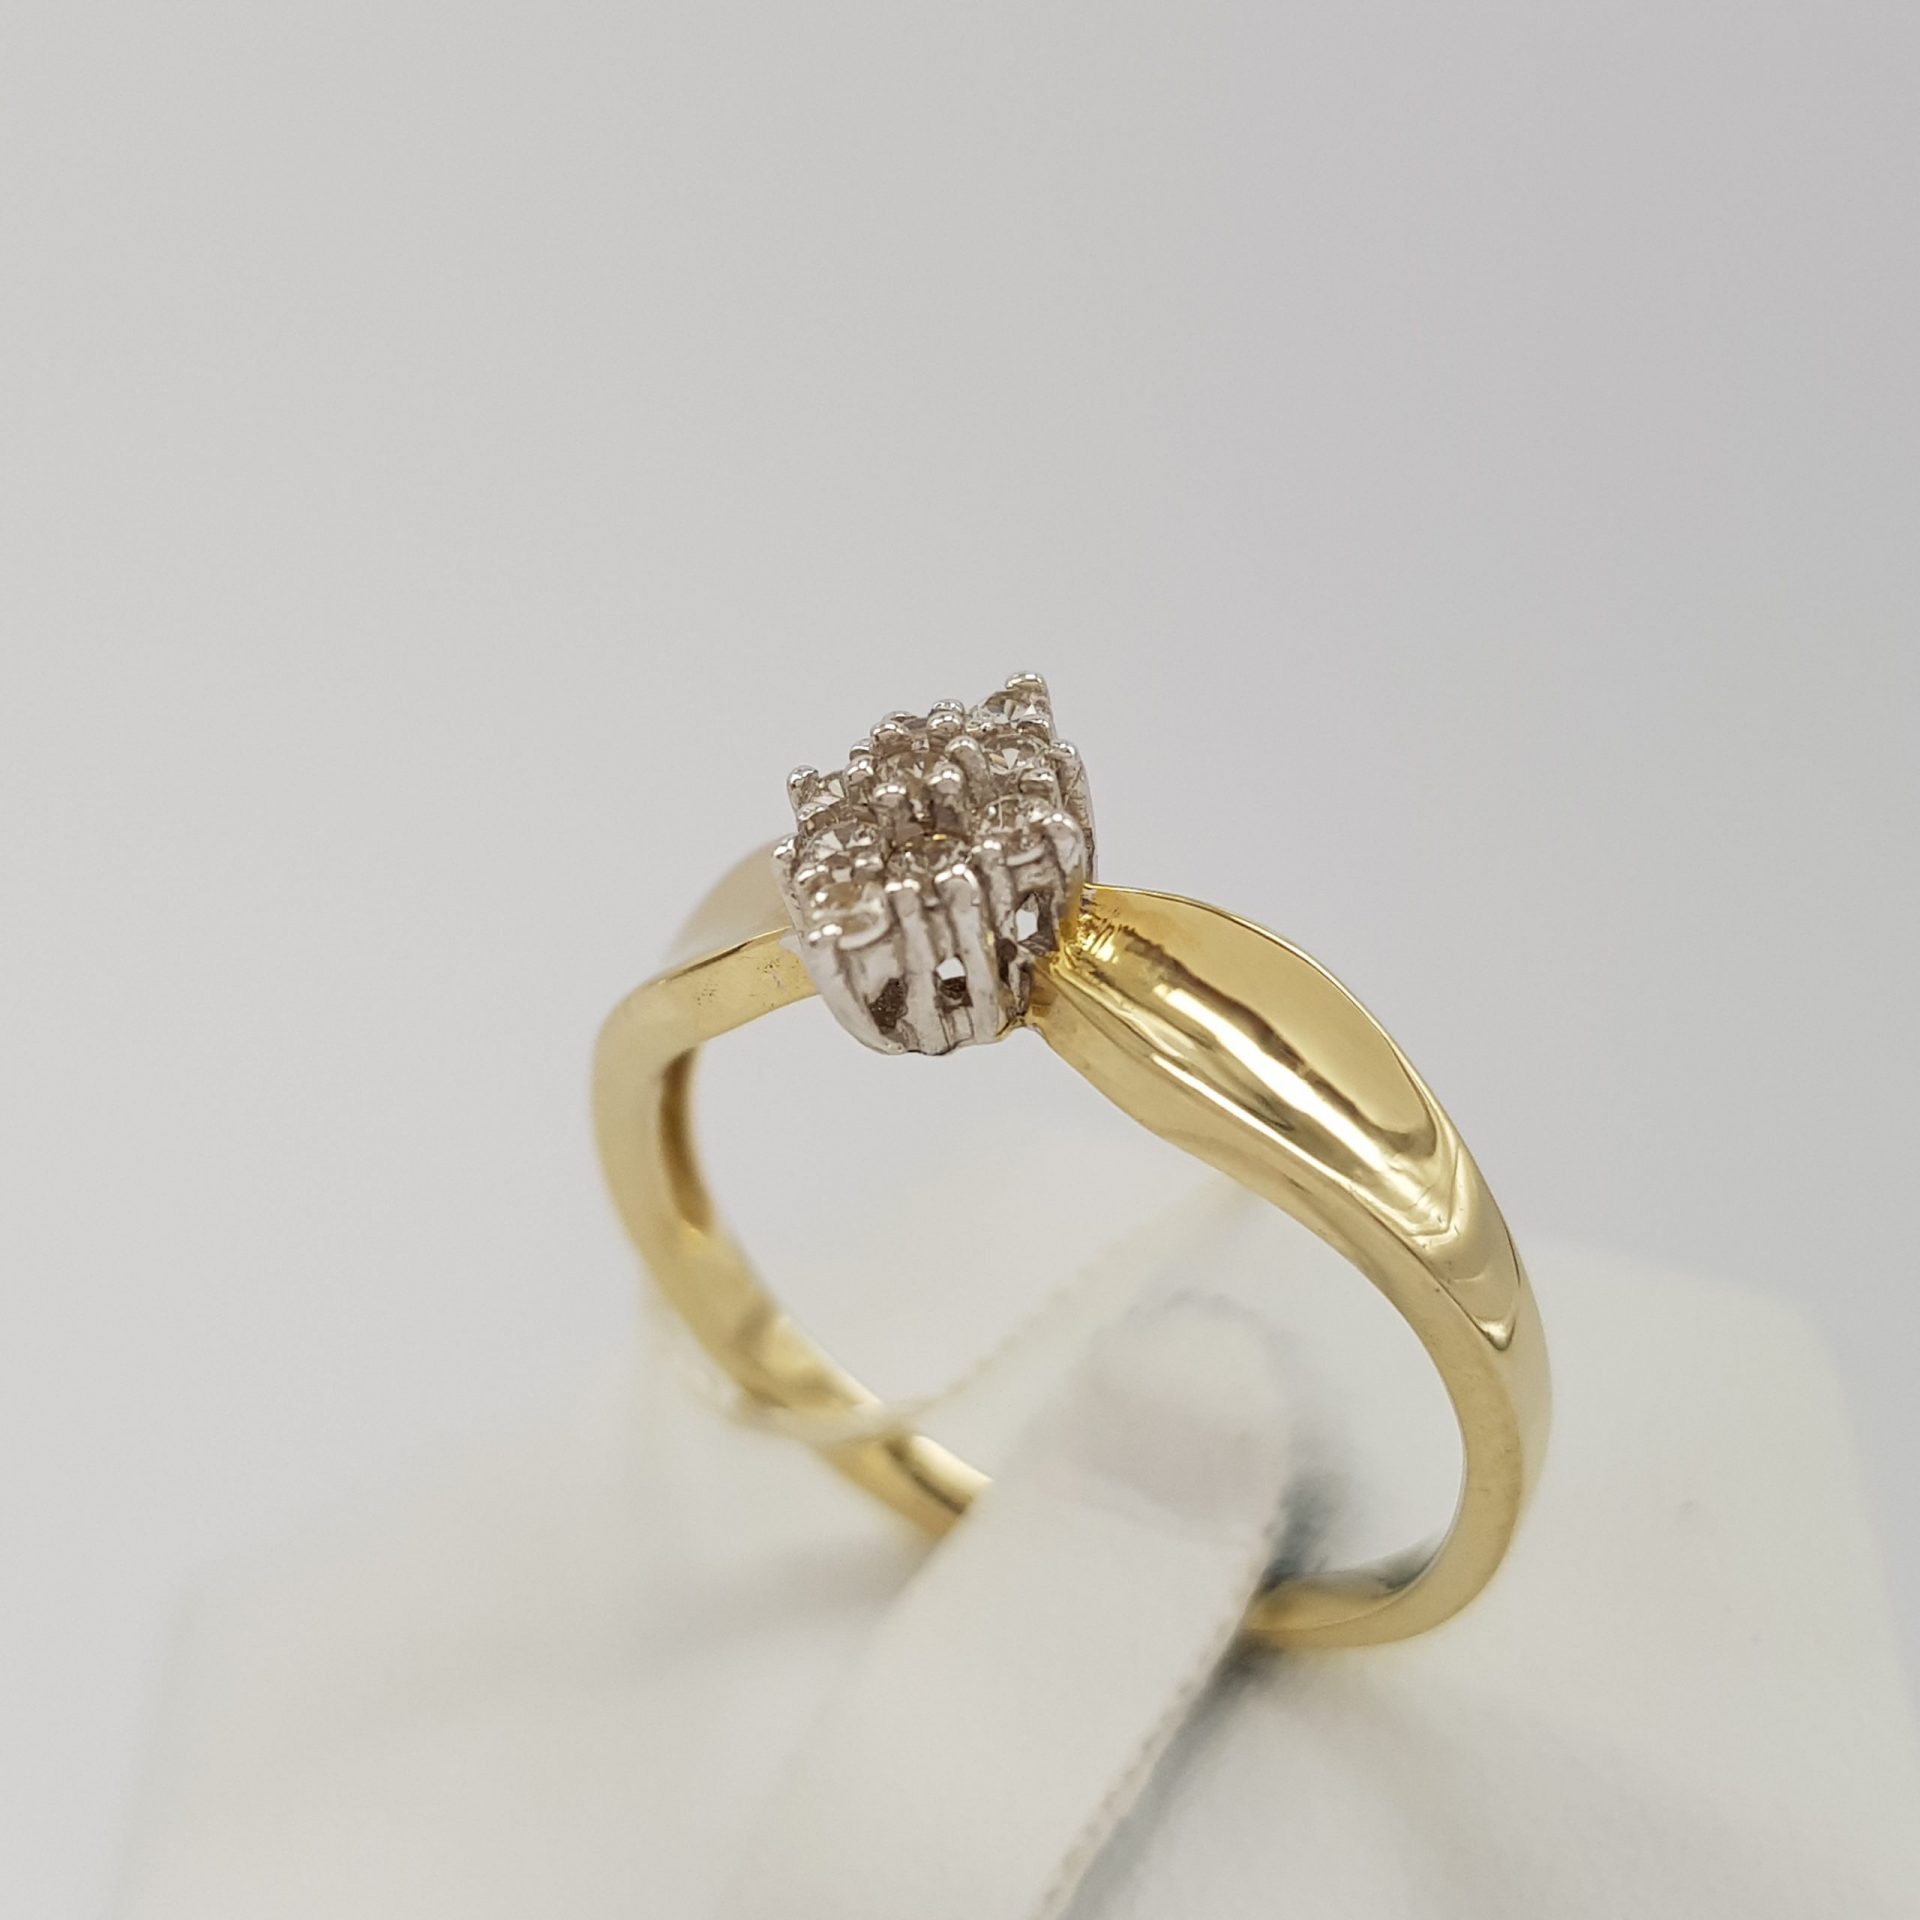 Romantyczny, złoty pierścionek wykonany w ciekawym stylu